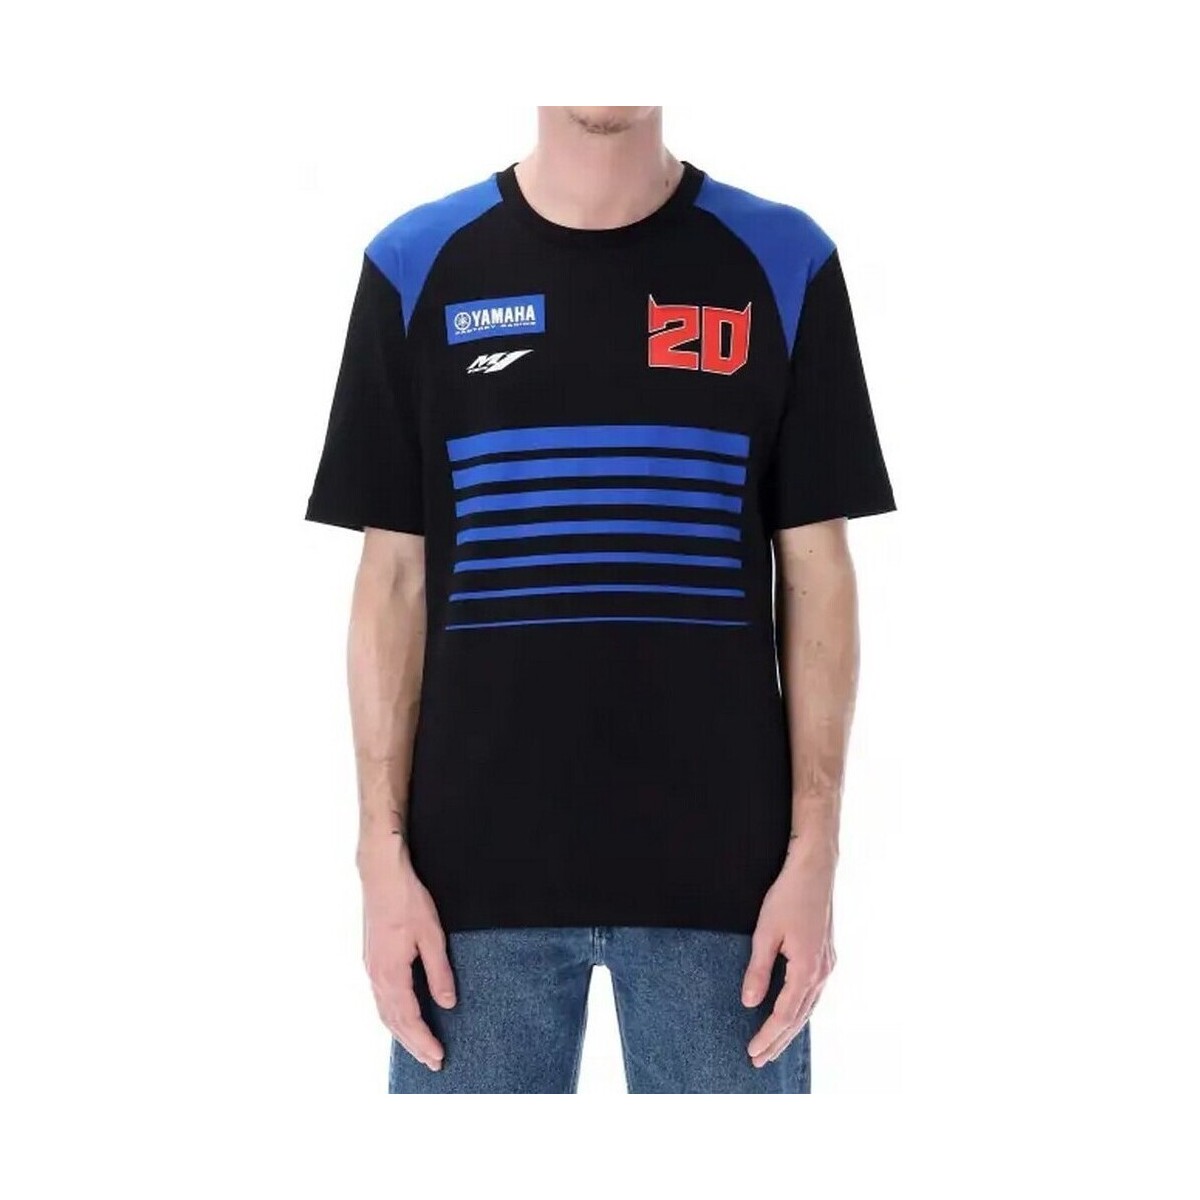 Vêtements Homme T-shirts manches courtes Yamaha - T-shirt Fabio Quartararo - noir et bleu Noir